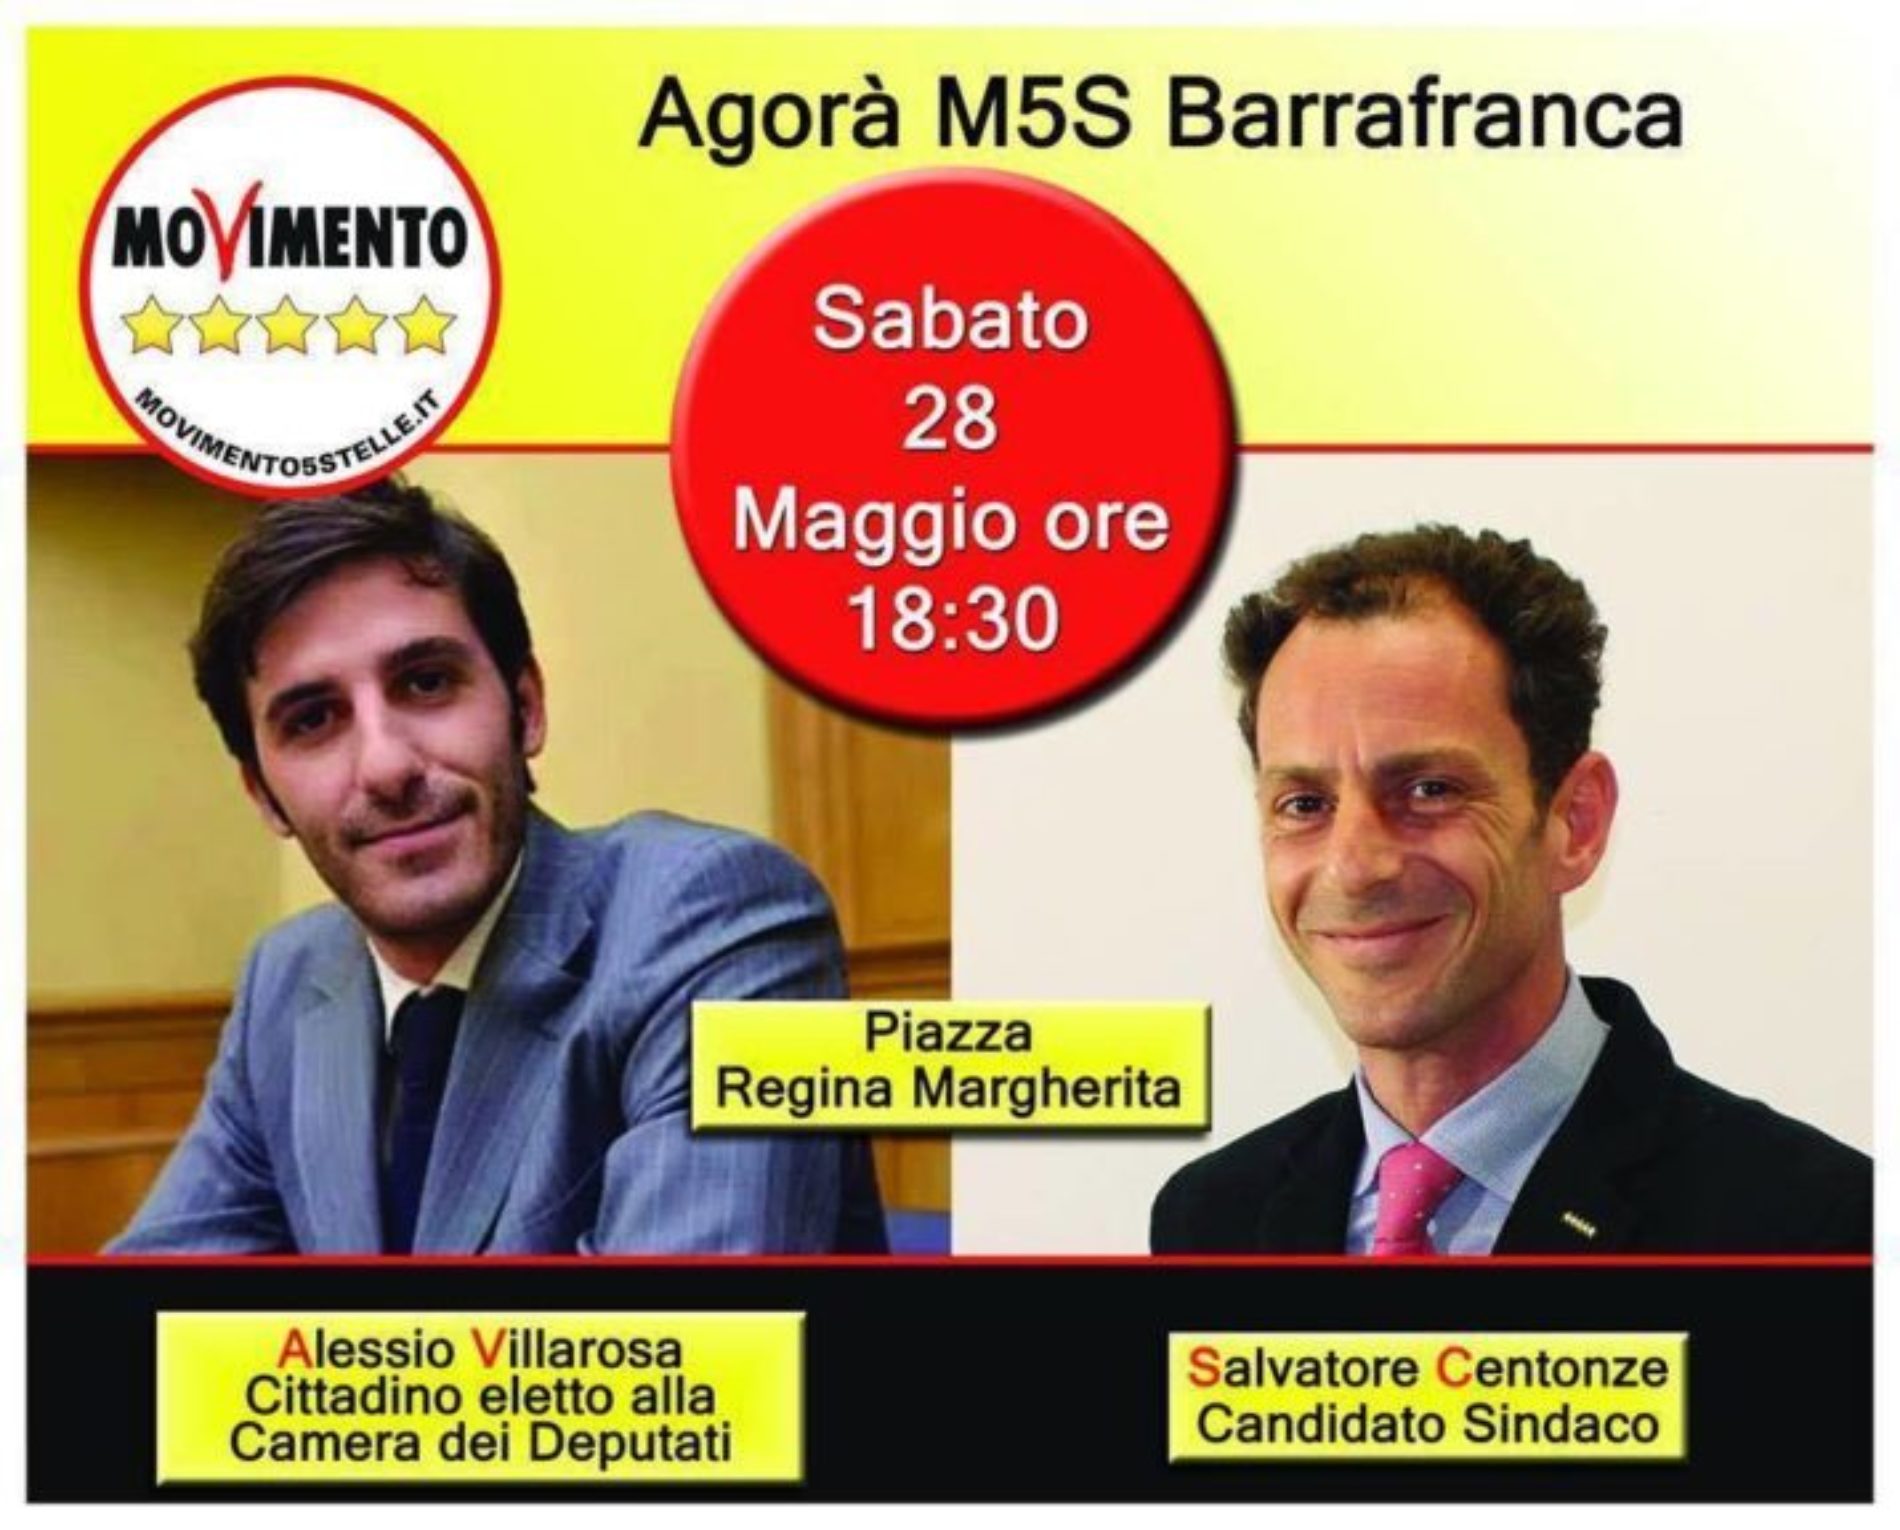 Comizio del M5S con il candidato a sindaco Salvatore Centonze dalle ore 19 alle ore 20